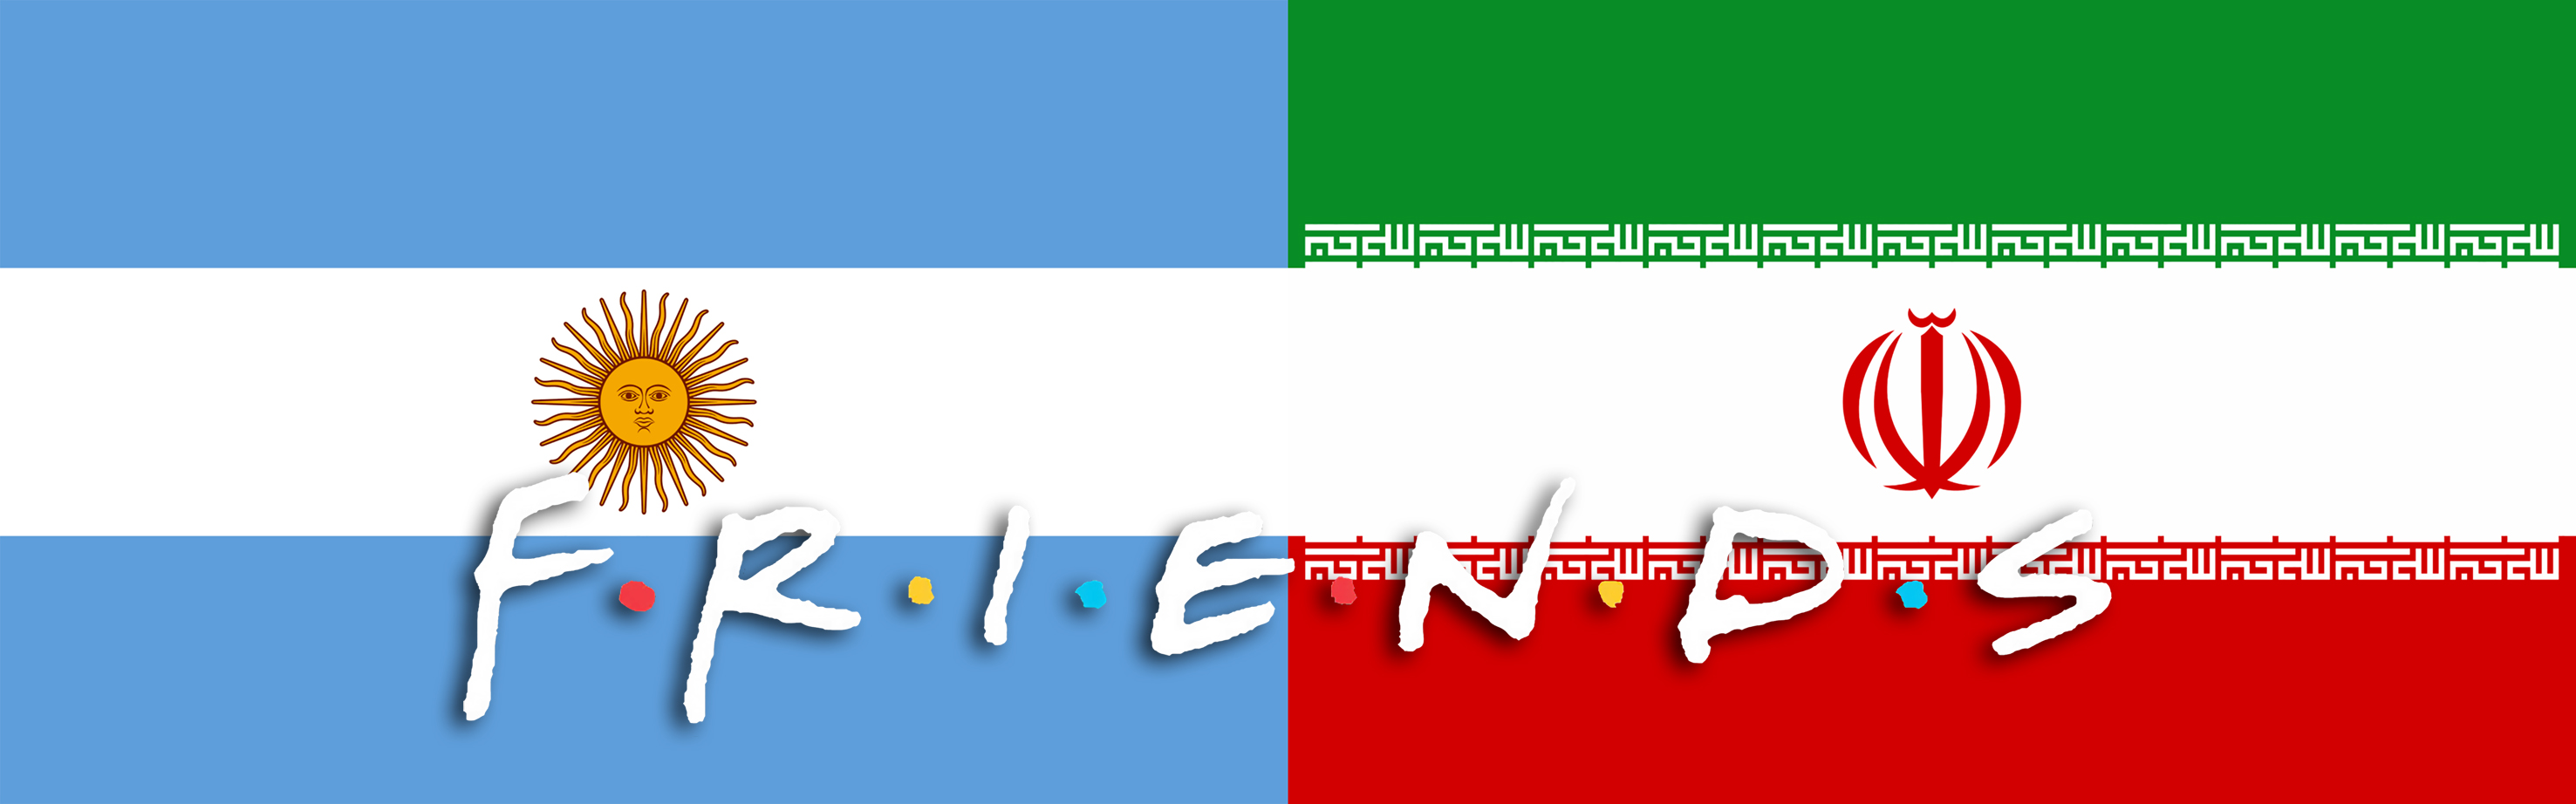 argentina e irã